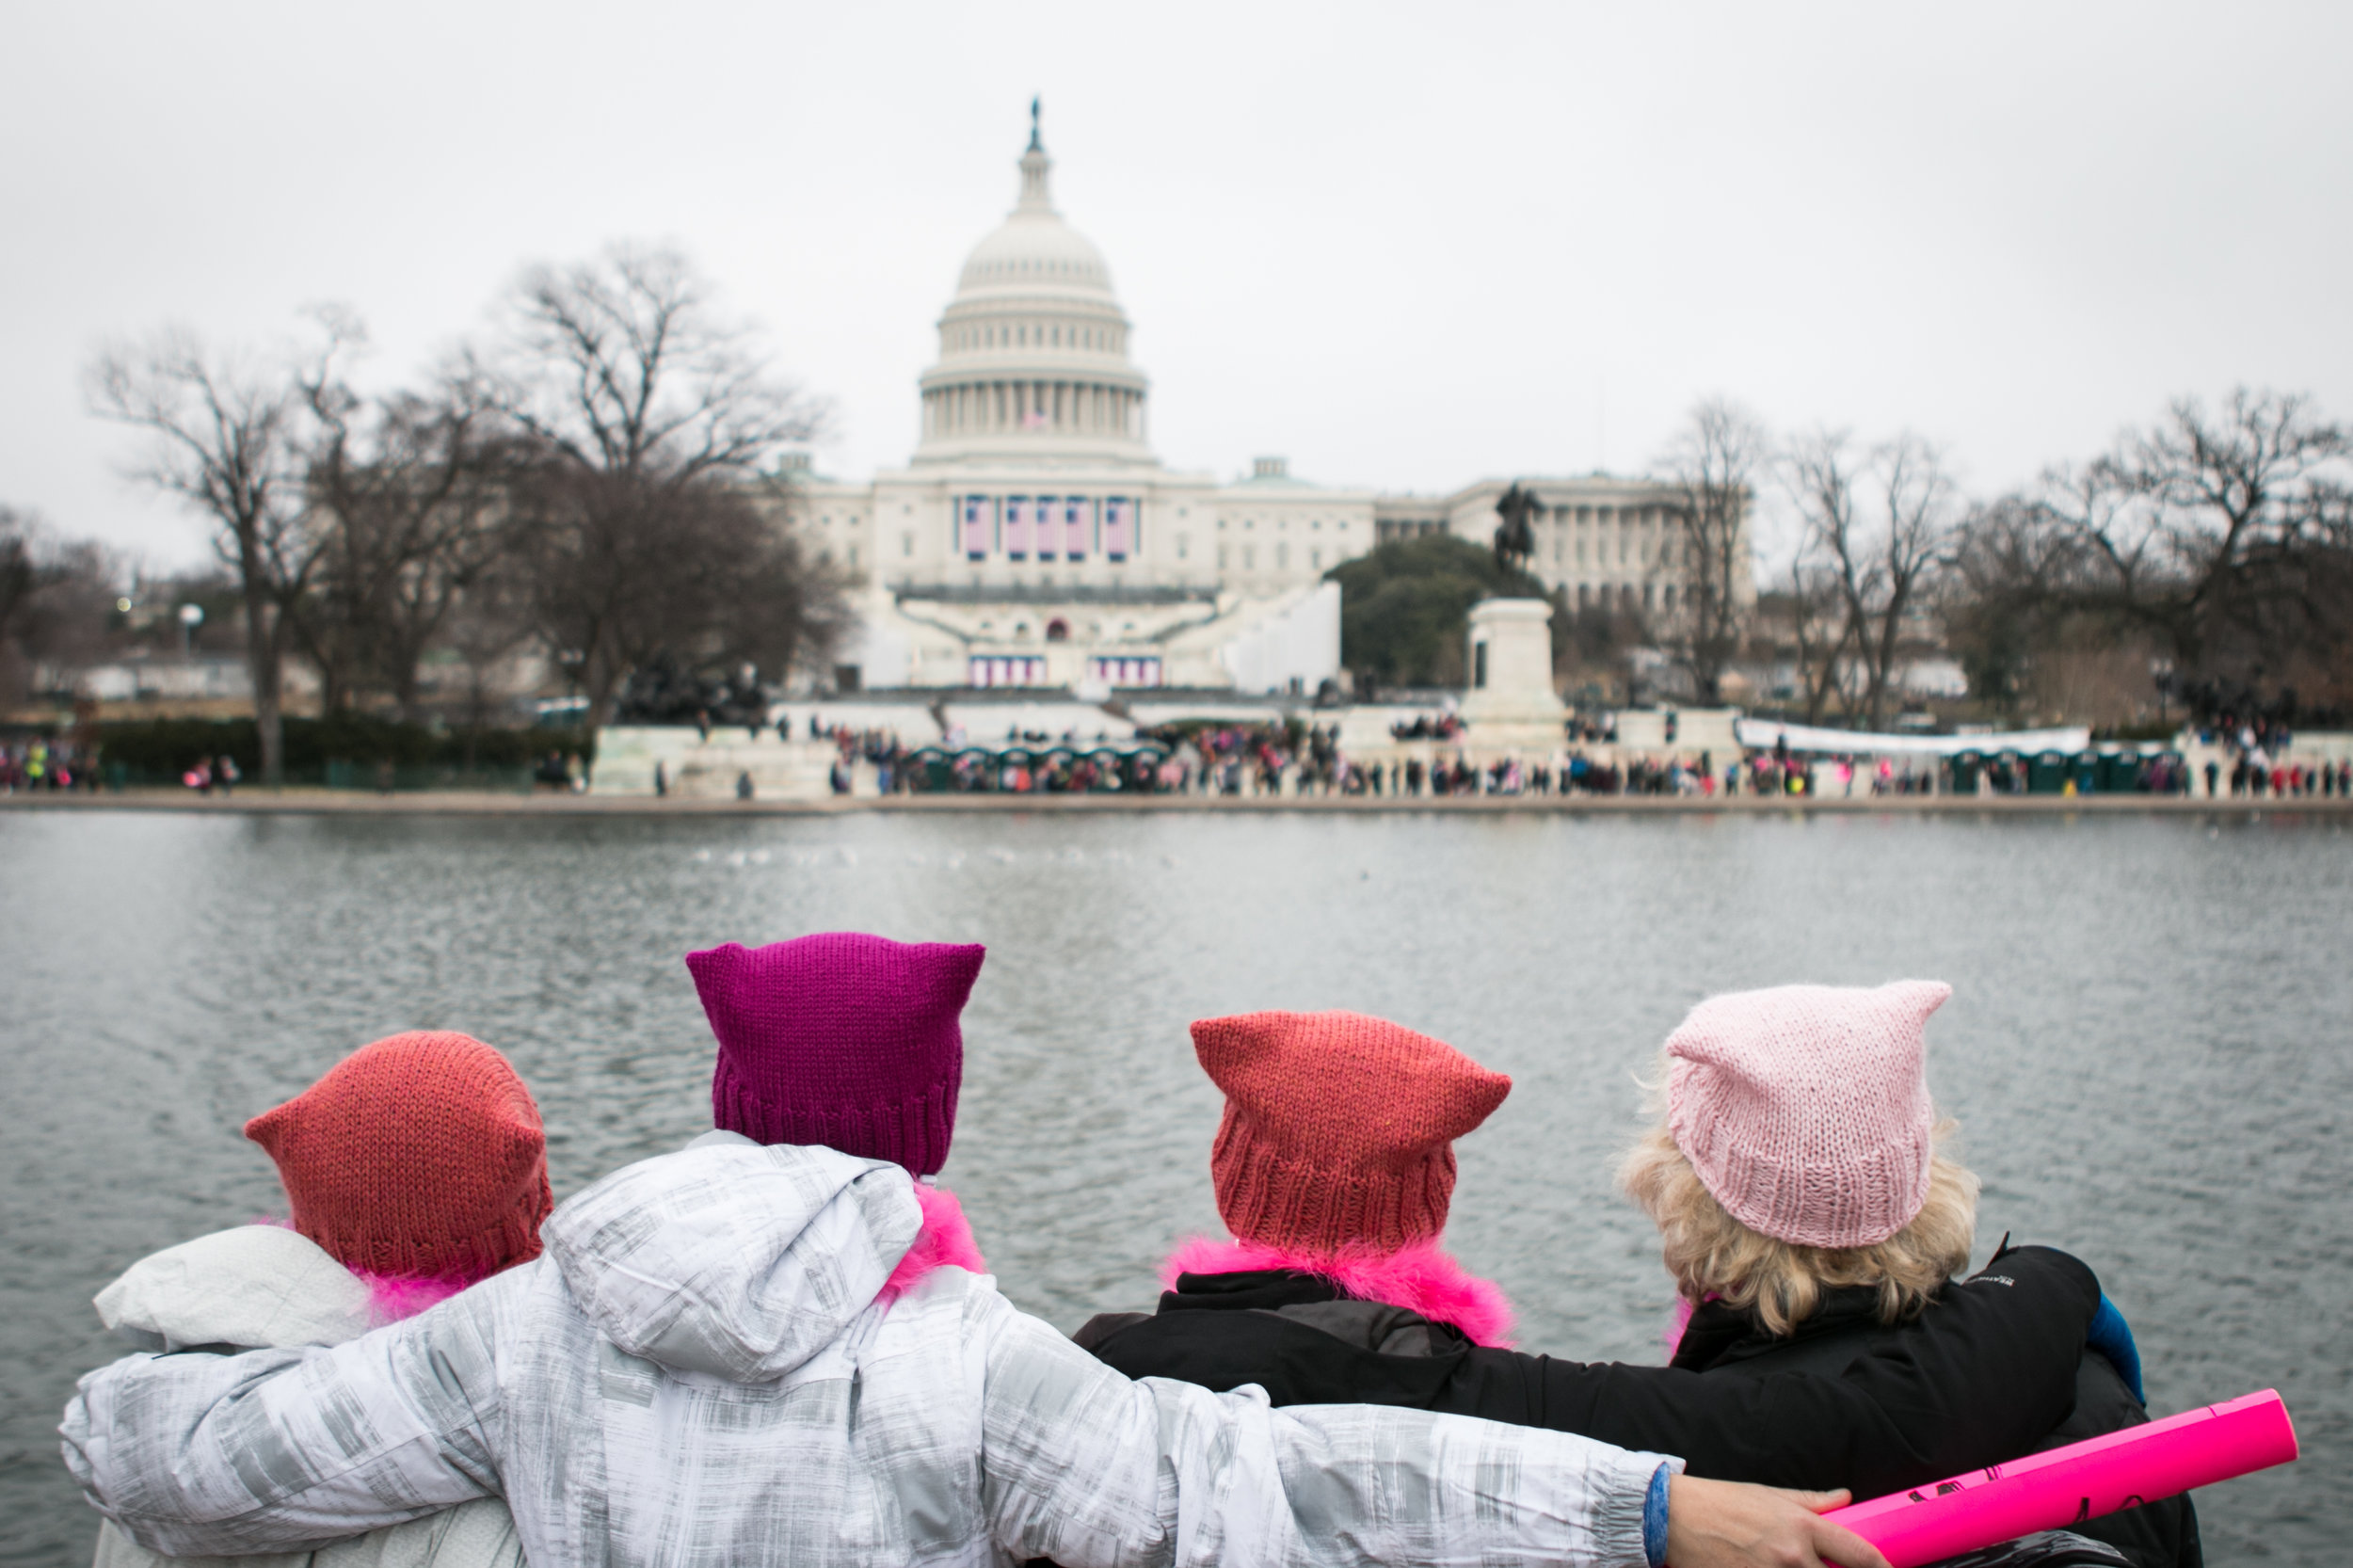  Women's March, Washington, DC 